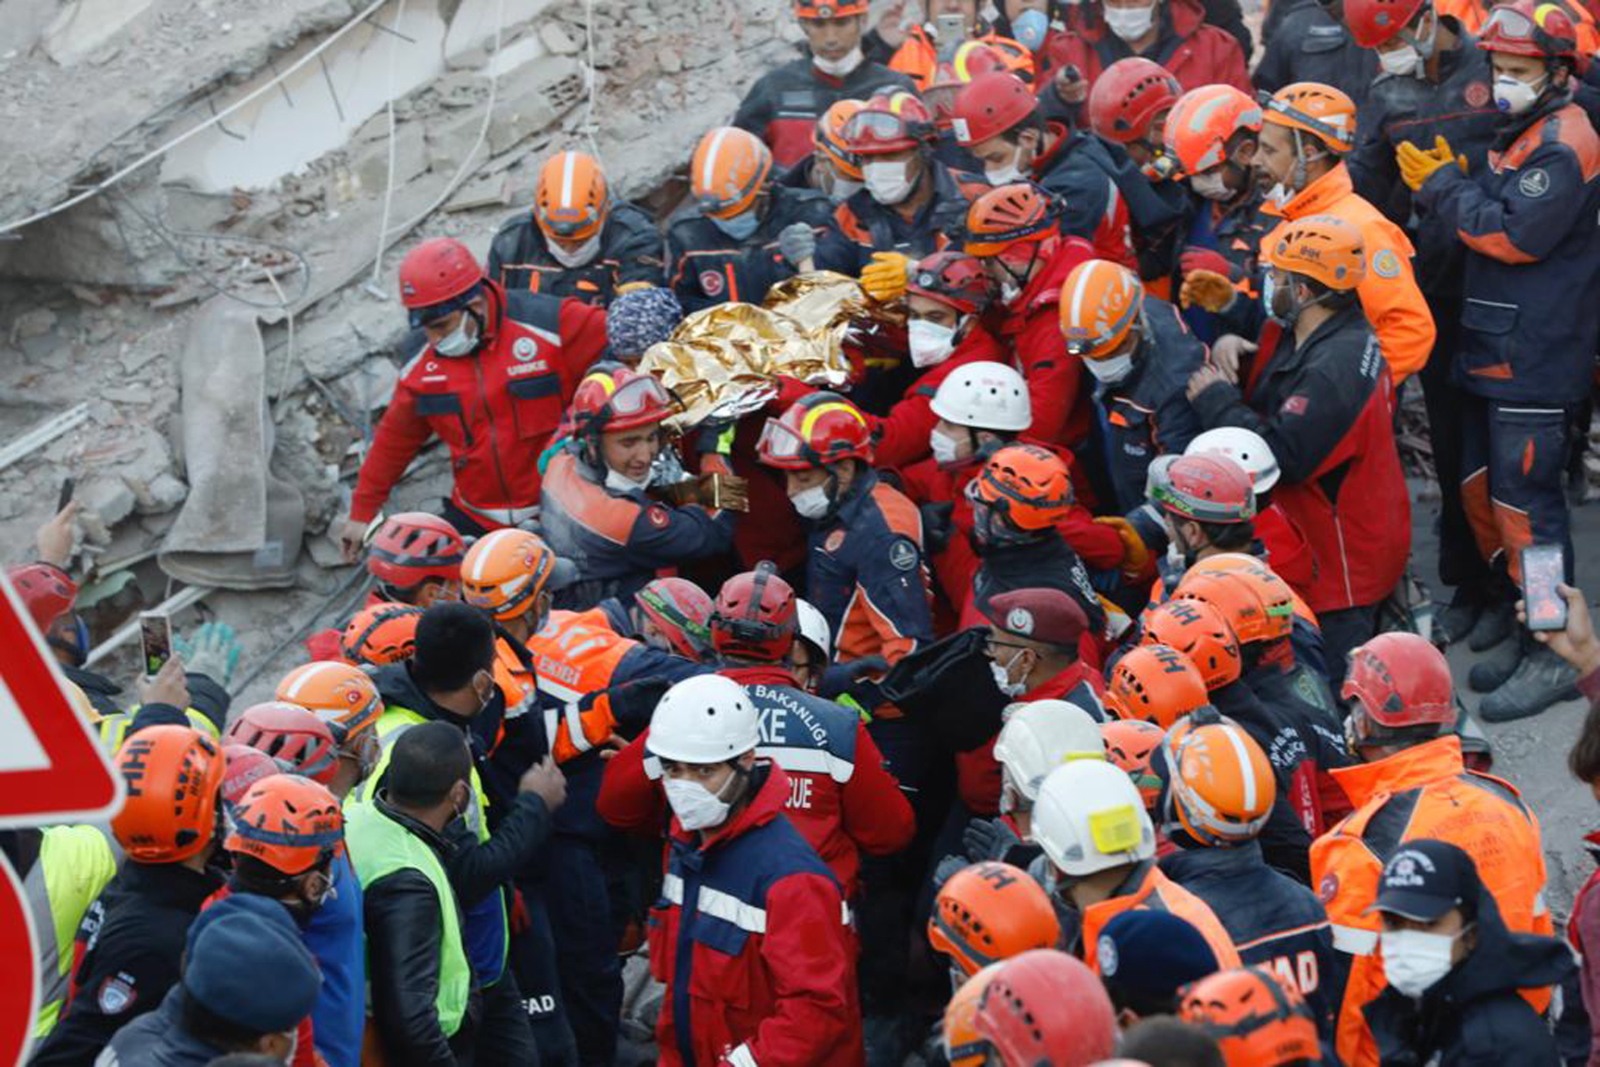 Turcja uratowany 3-letnie dziecko, które przeżyło pod zawalonym w wyniku trzęsienia ziemi budynkiem Fot. EPA/ISTANBUL FIRE DEPARTMENT 